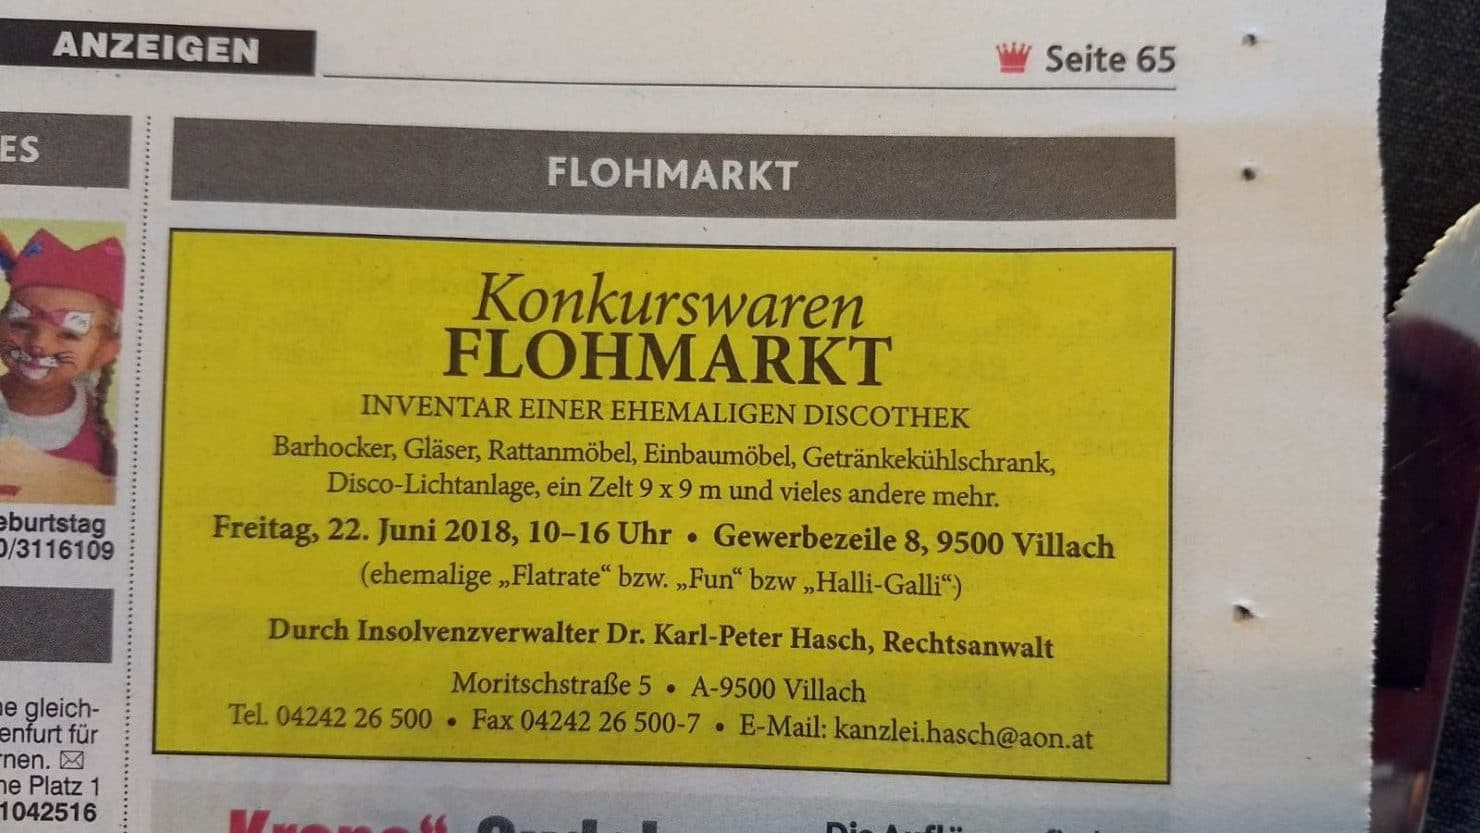 Anzeige über den Flohmarkt – gefunden heute in der Kronen Zeitung